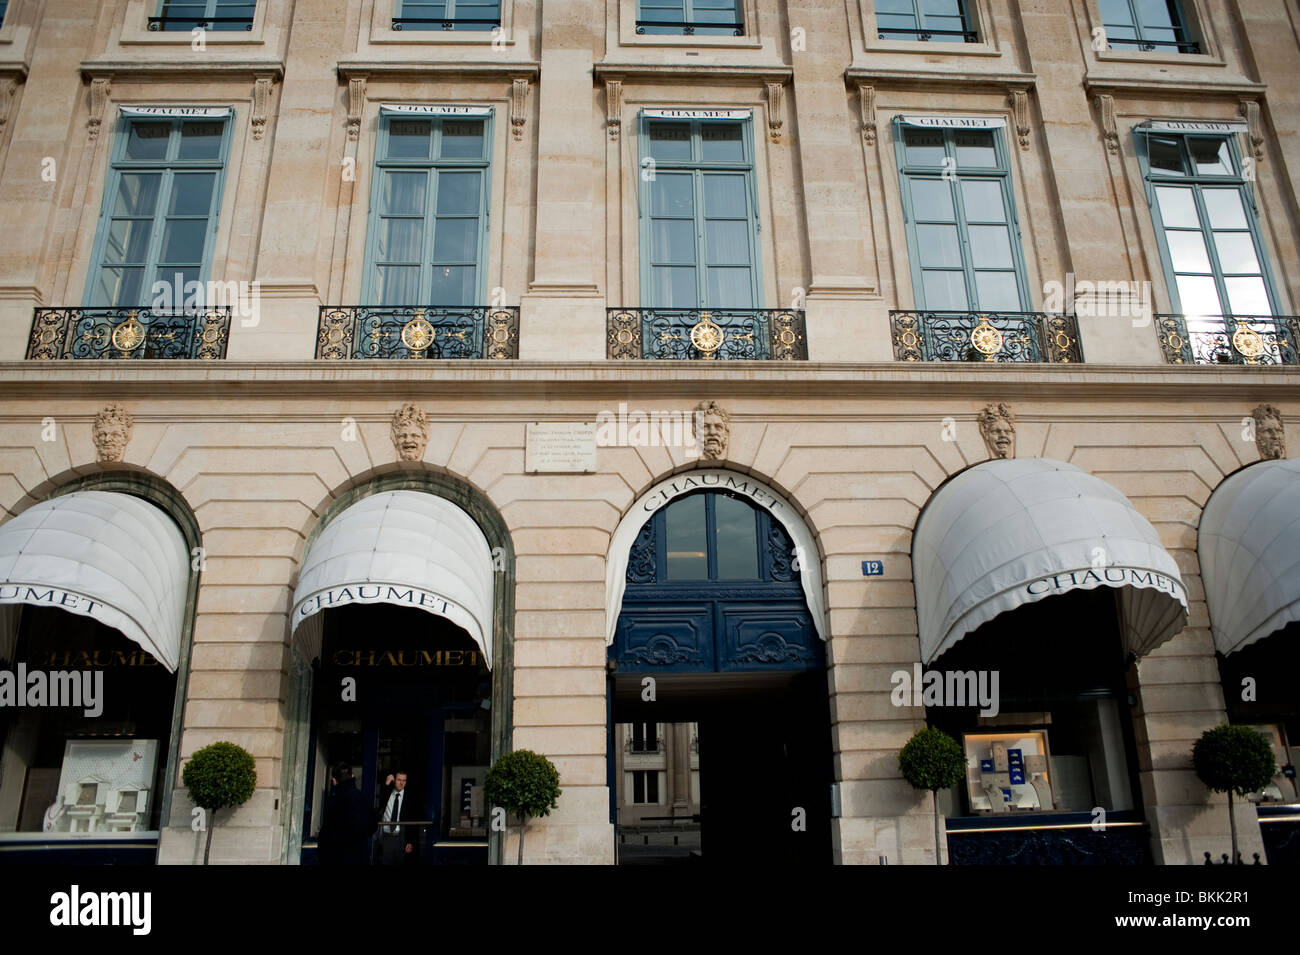 Chaumet new fine jewellery boutique in Place Vendome Paris